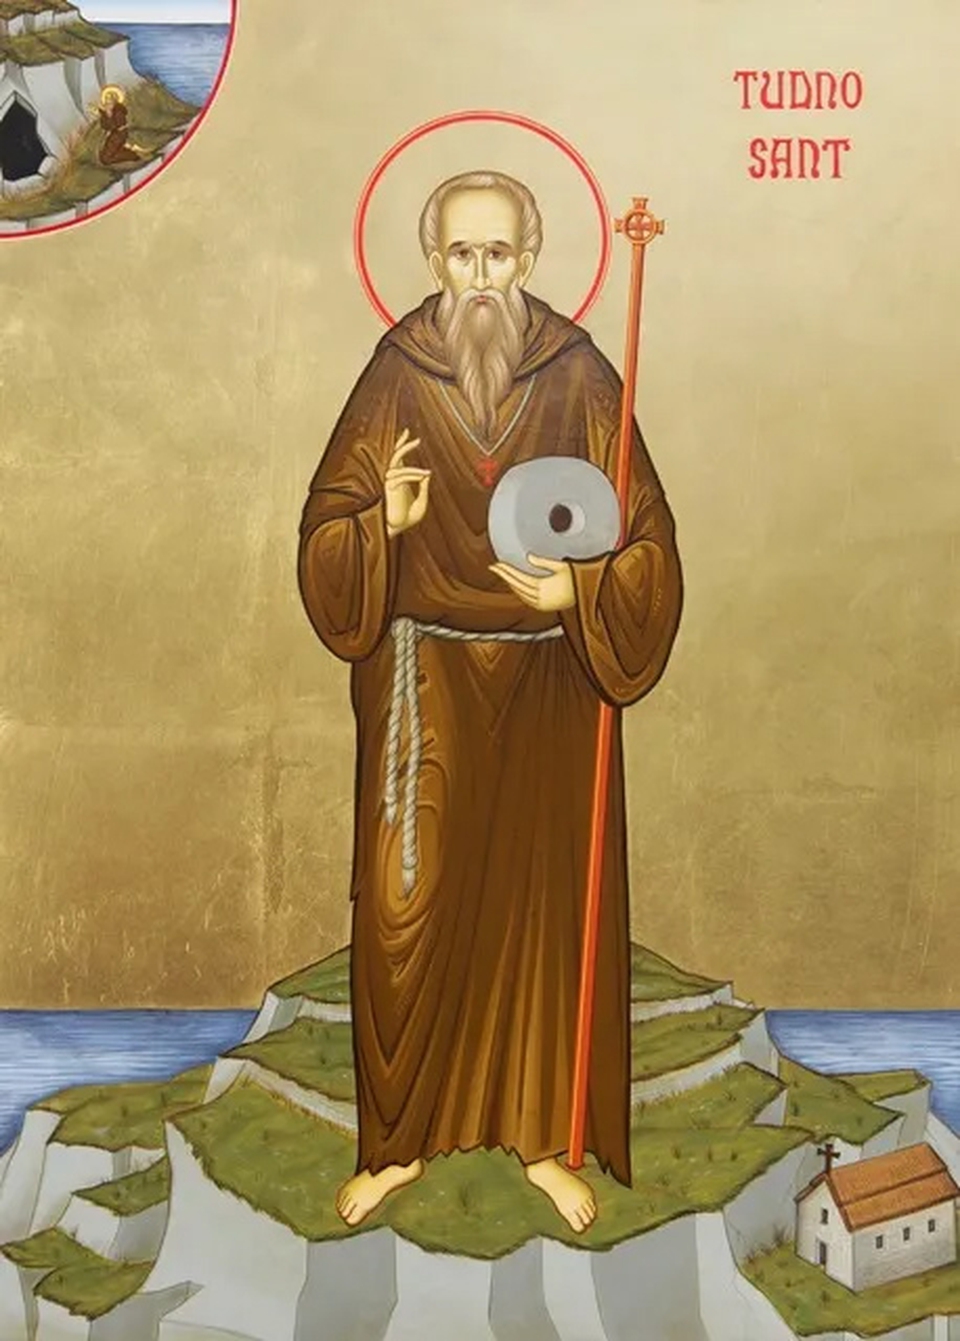 Saint Tudno icon | Eicon Sant Tudno